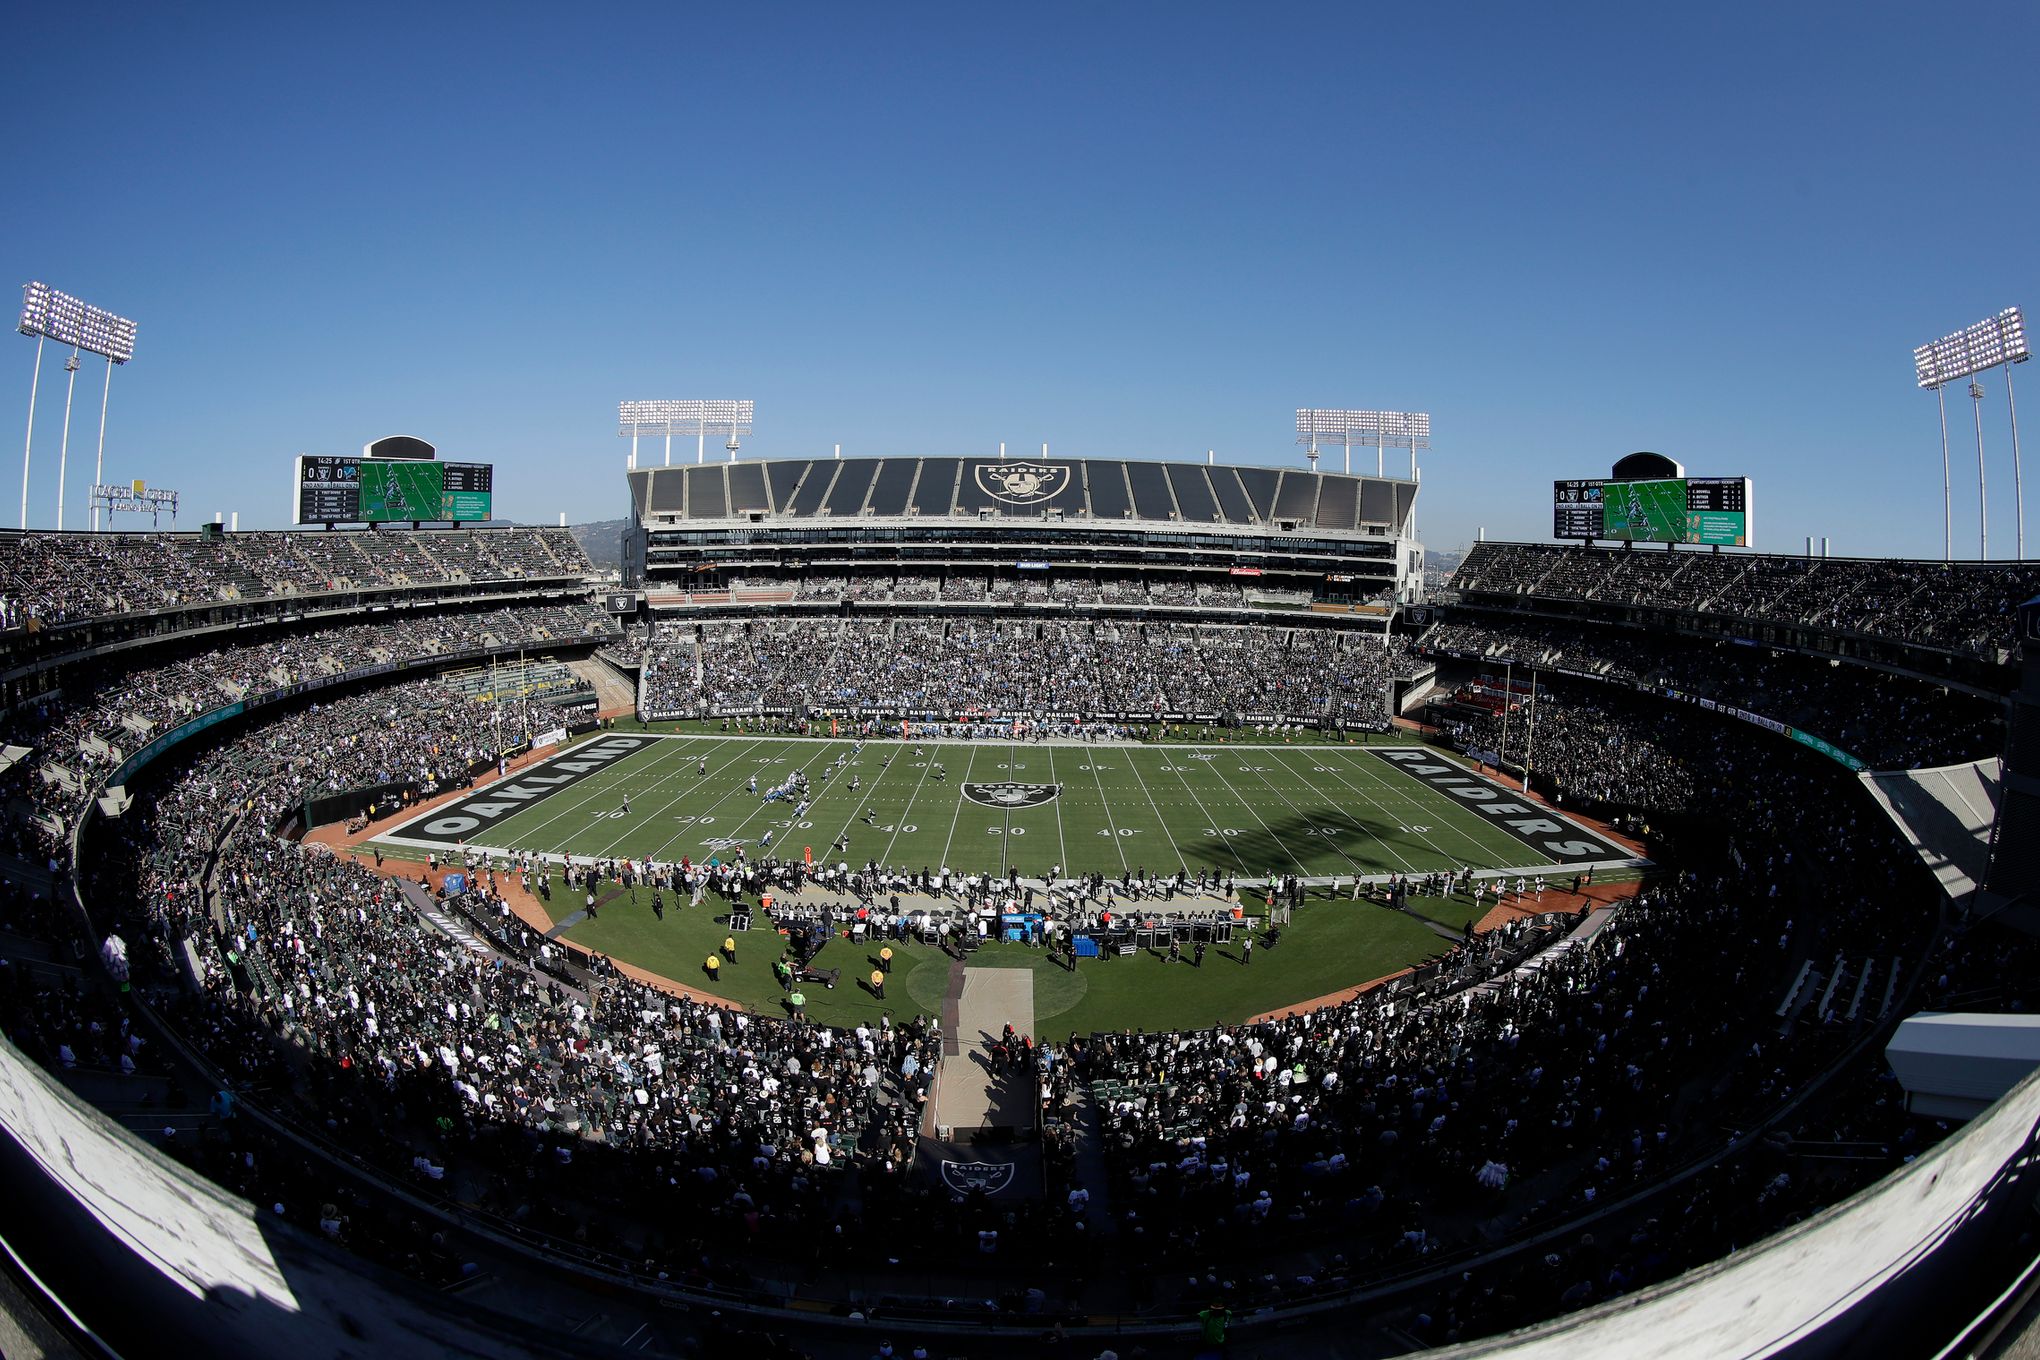 Raiders bid farewell to Oakland in game vs. Jaguars